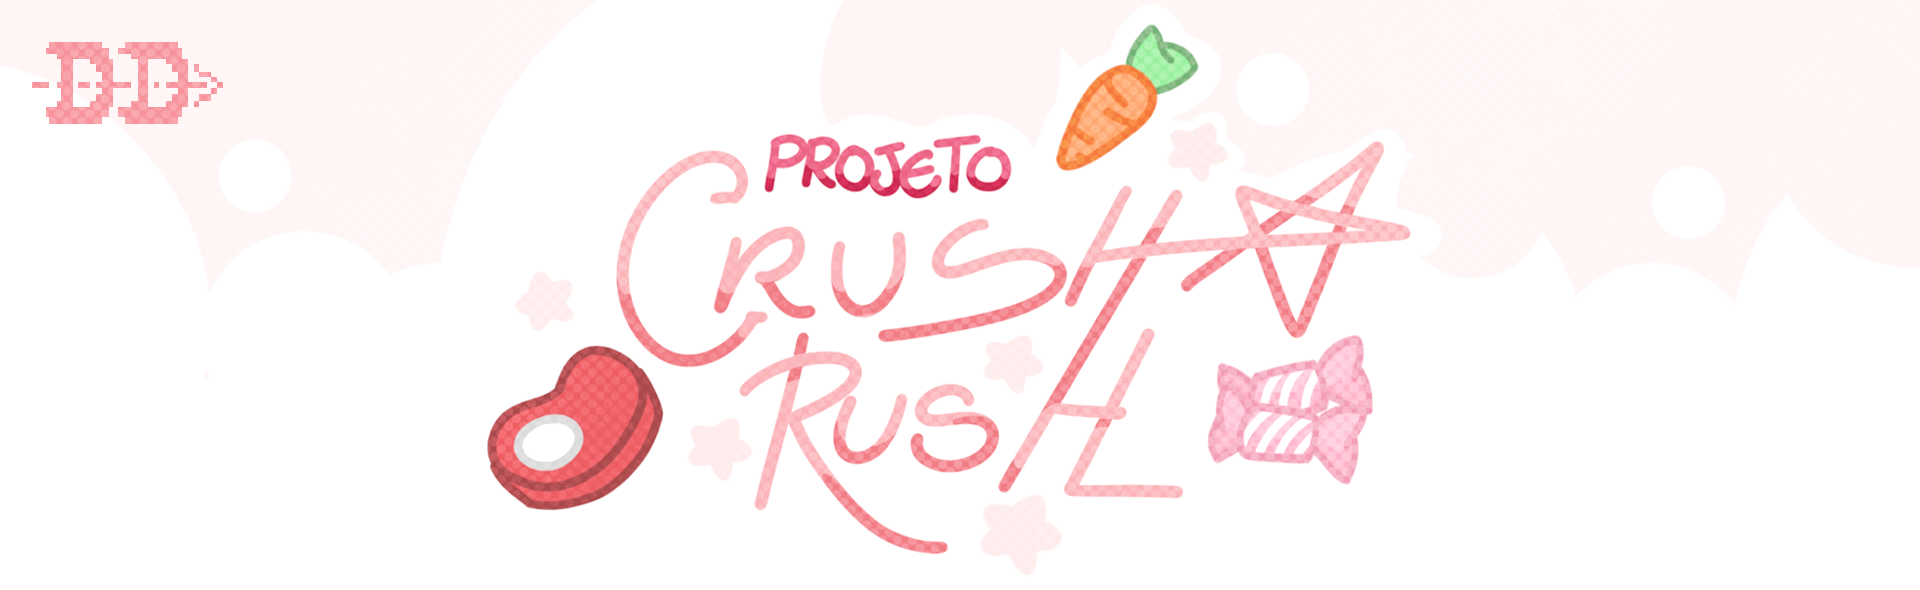 Projeto: Crush Rush